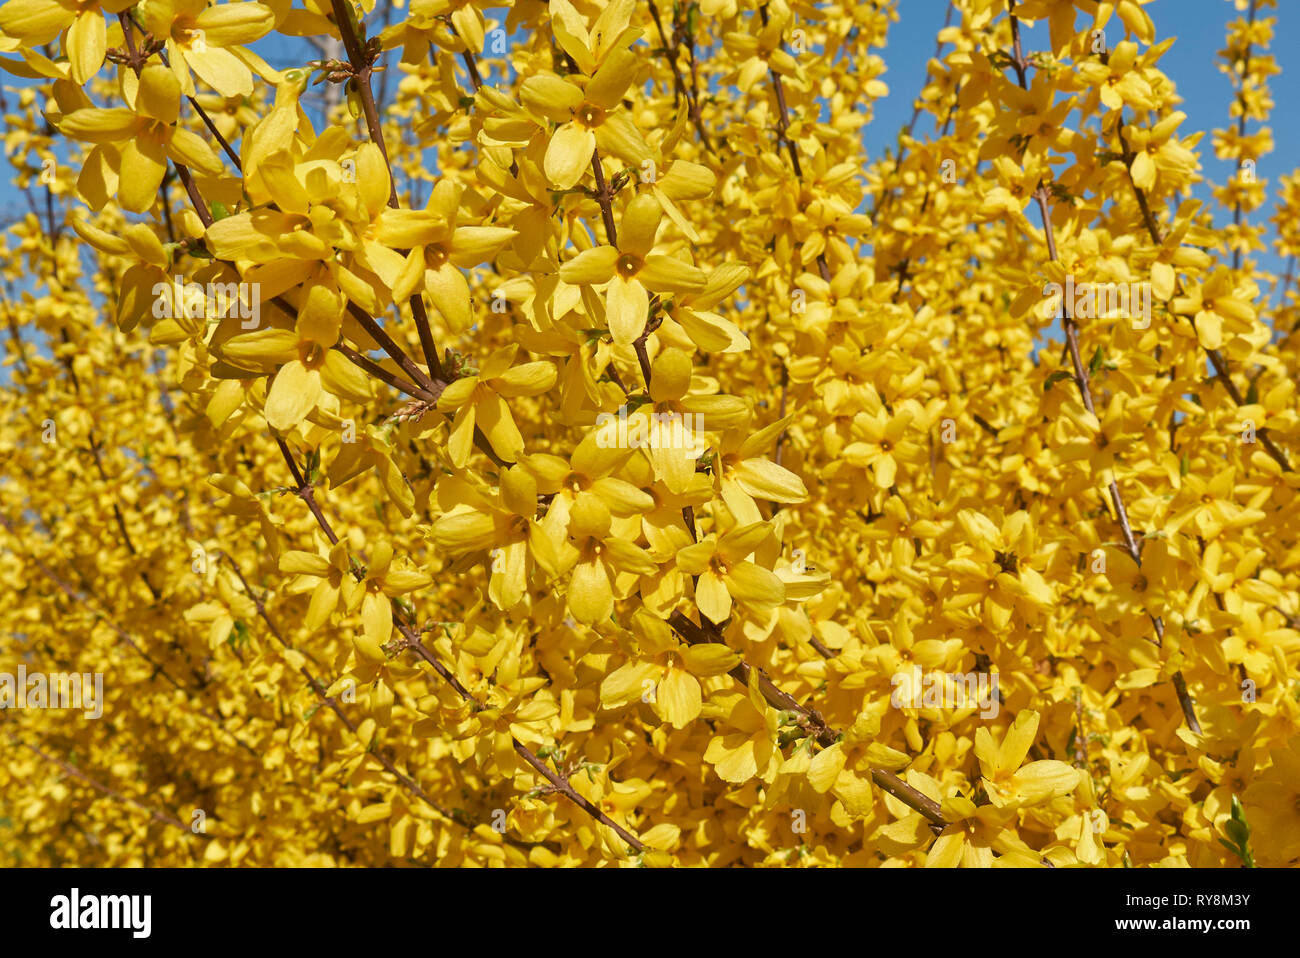 Forsythia yellow flowers Stock Photo